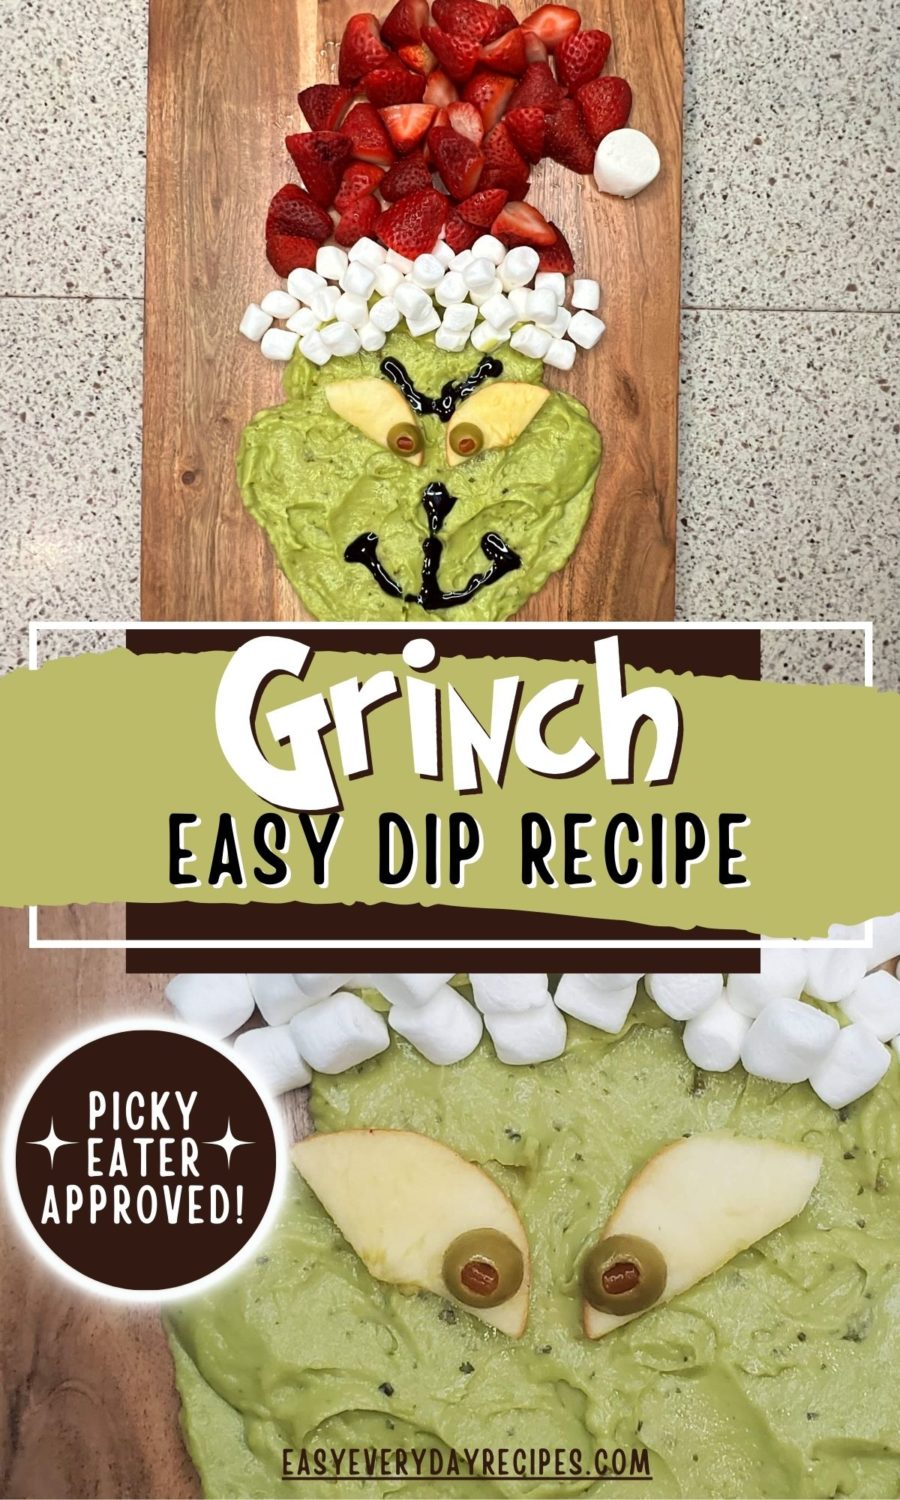 Grinch easy dip recipe.